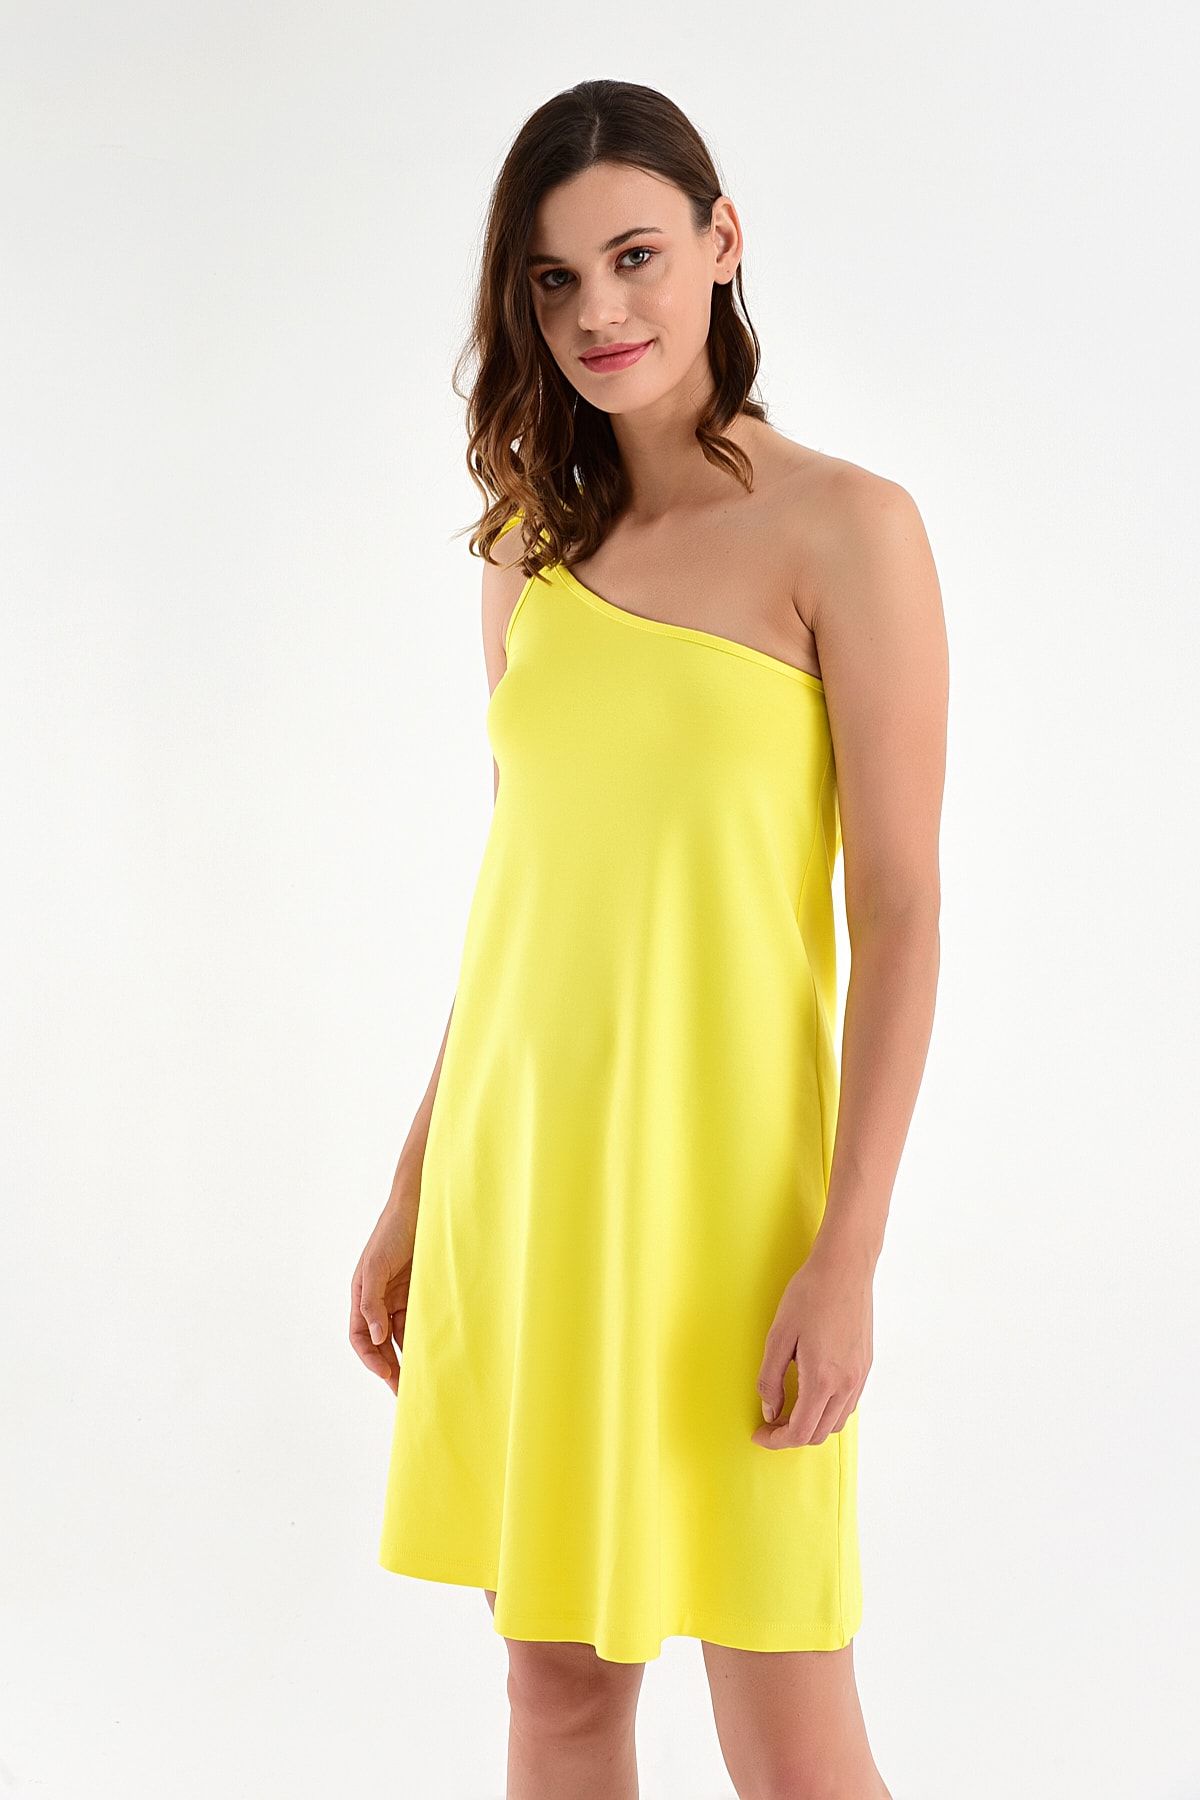 Laranor Kadın Sarı Tek Omuzdan Bağlamalı Elbise 20L6804